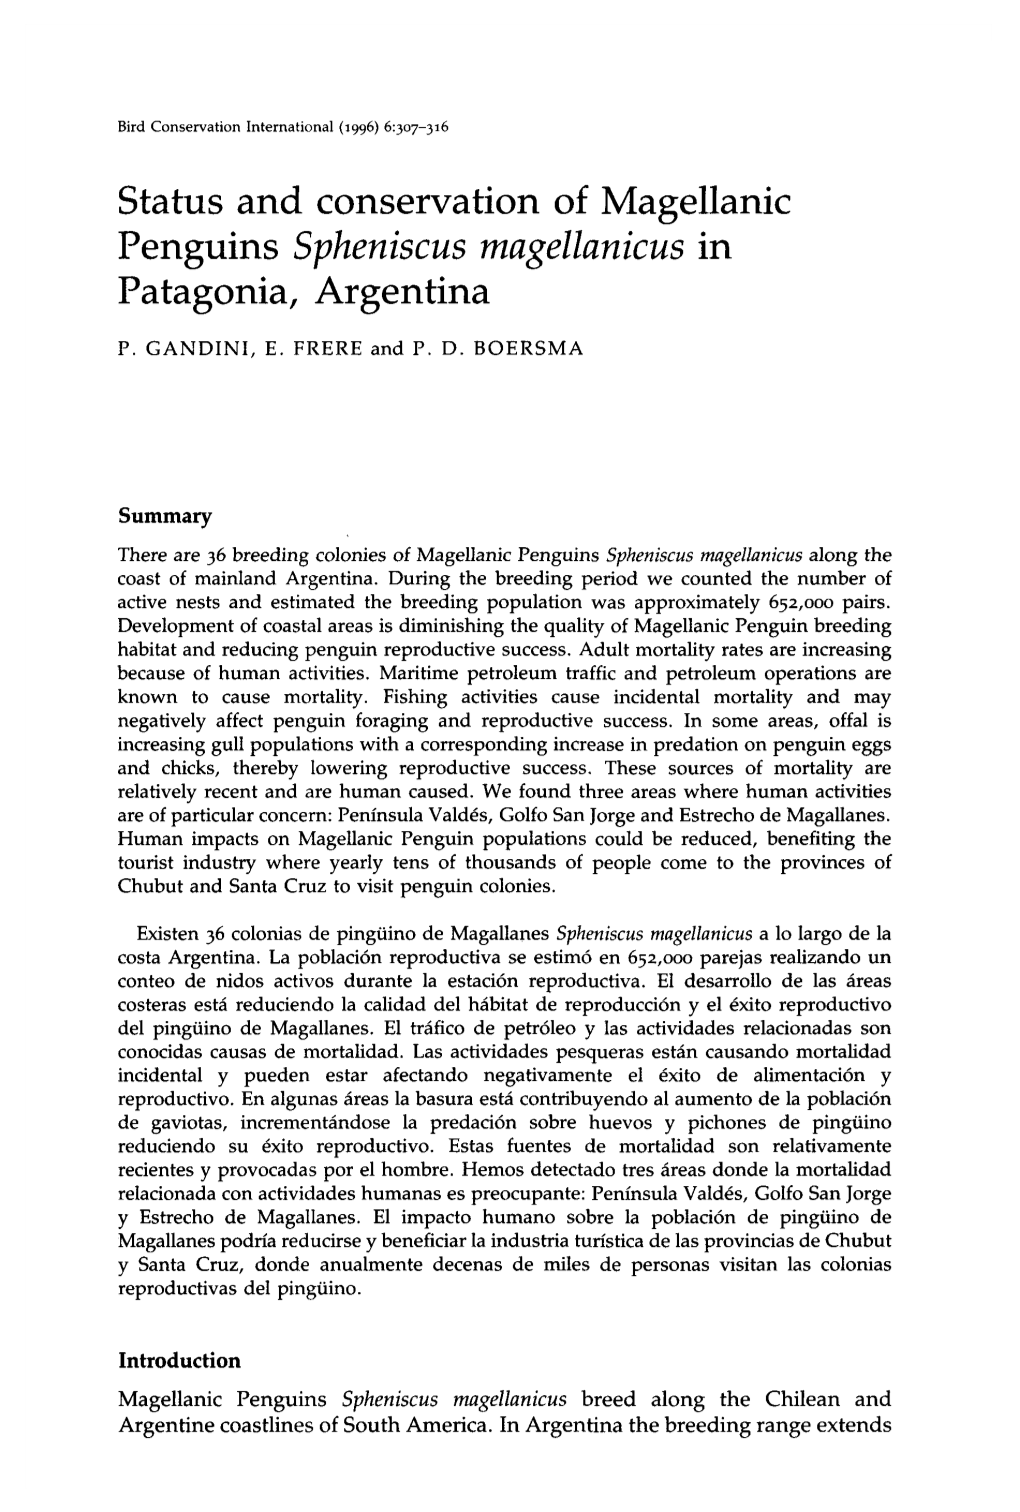 Status and Conservation of Magellanic Penguins Spheniscus Magellanicus in Patagonia, Argentina